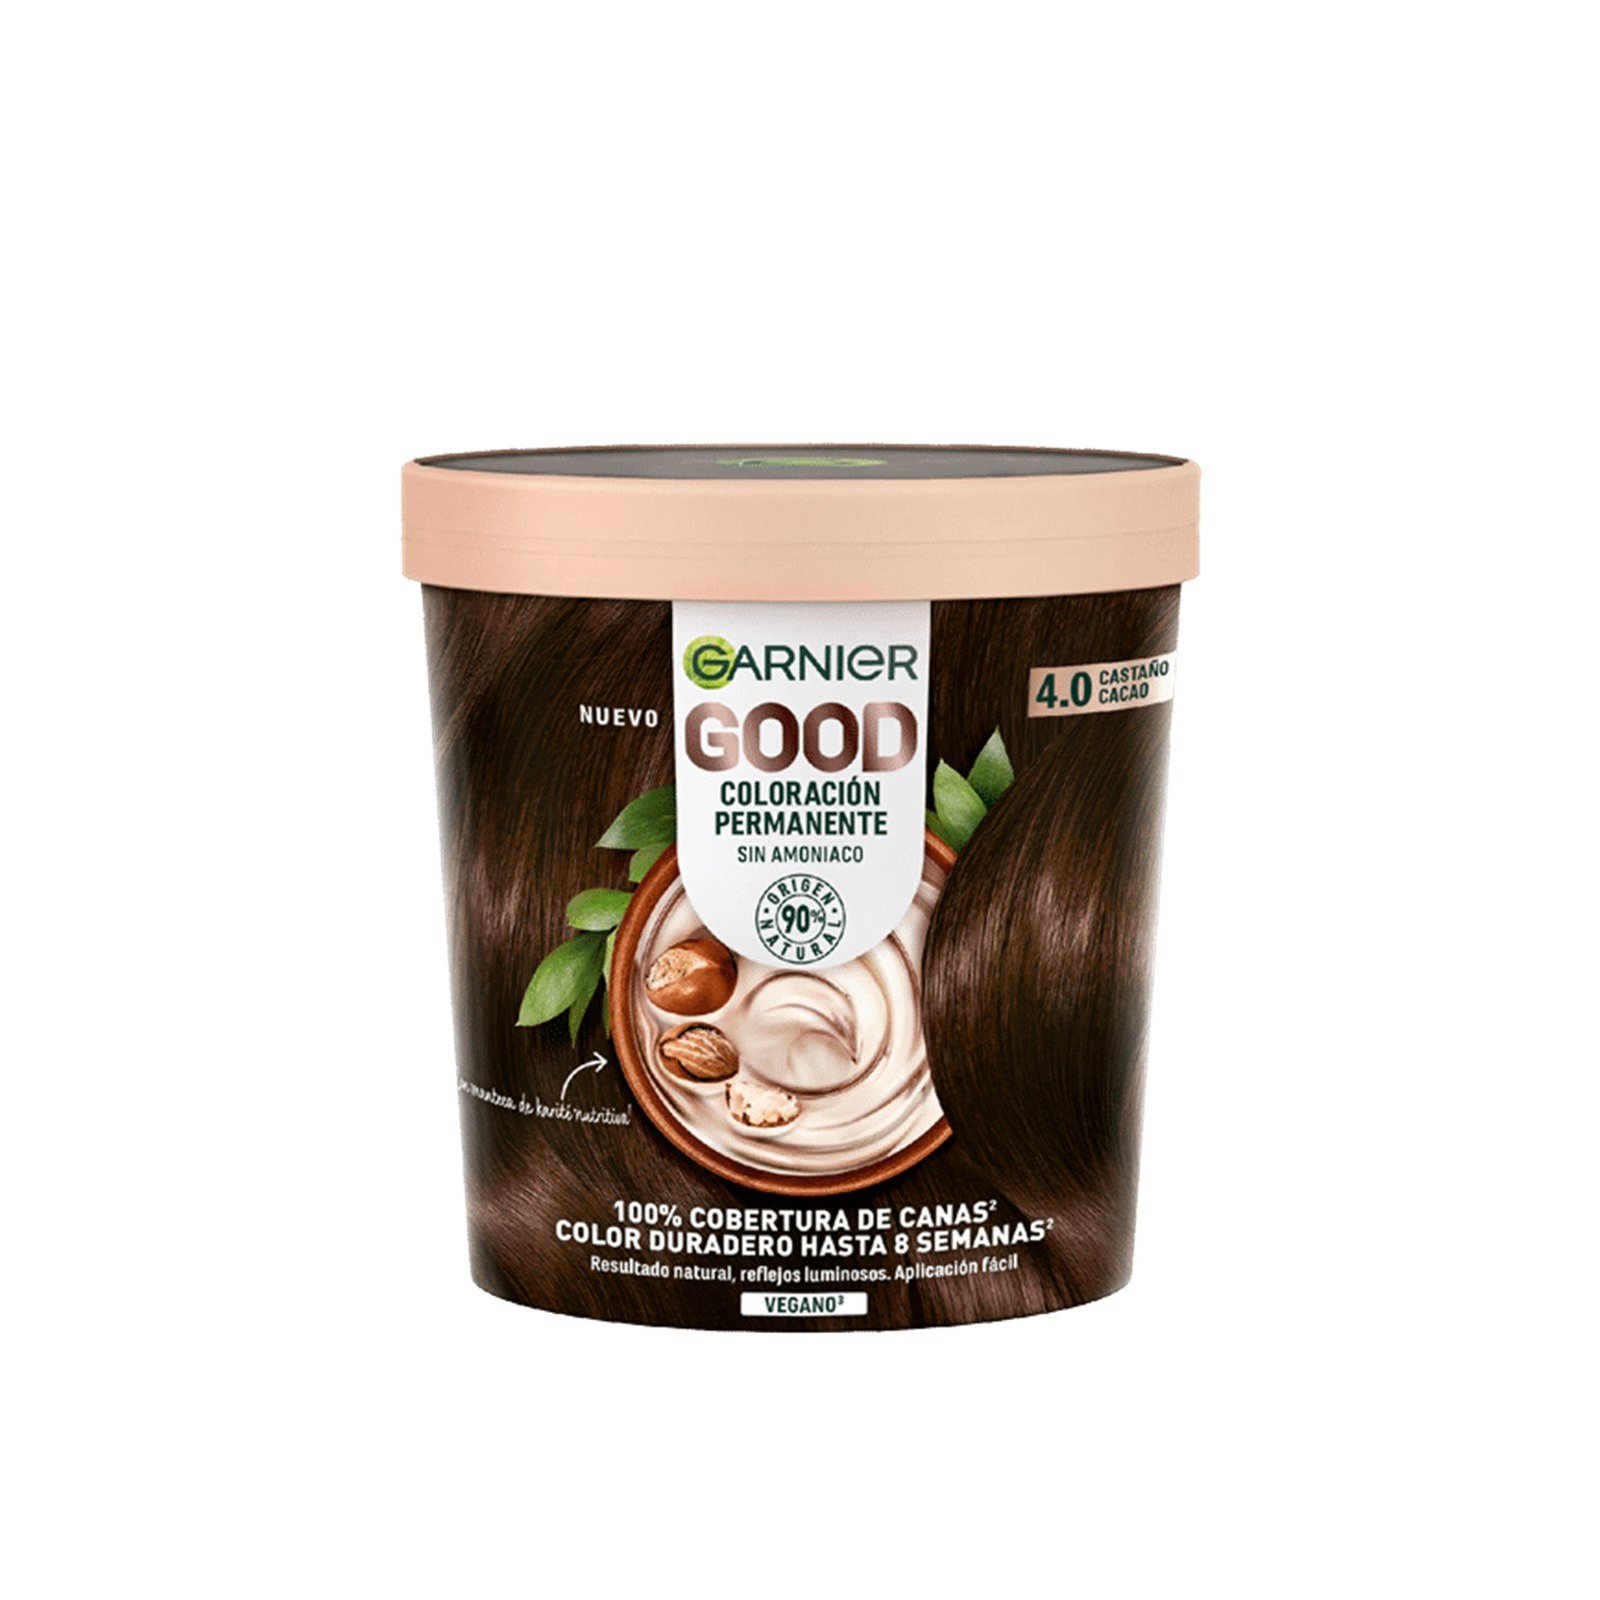 Garnier Good Permanent Hair Dye 4.0 Cacao Brown